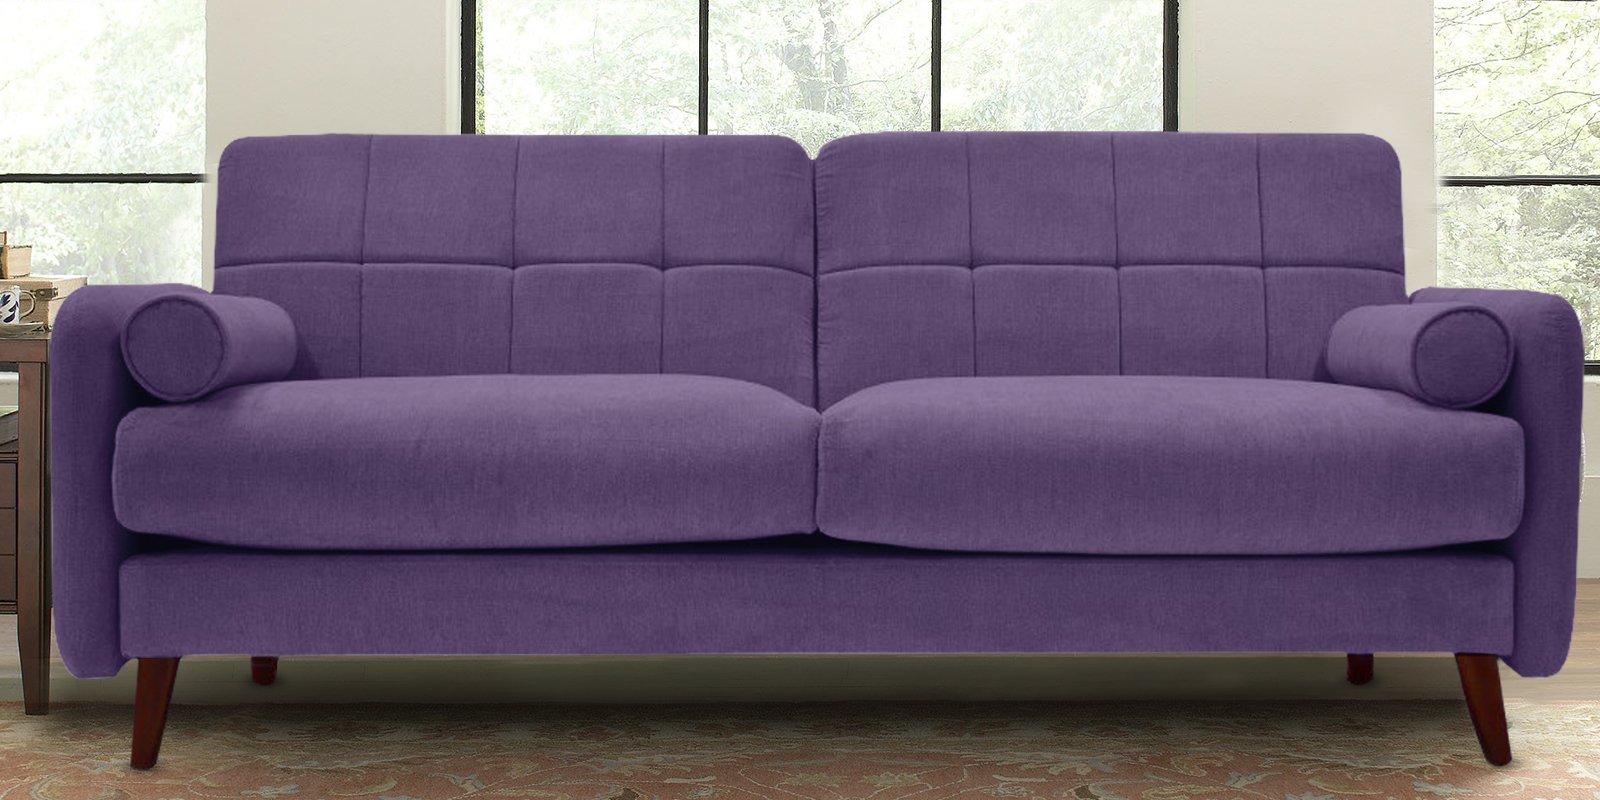 Grenola Two Seater Sofa In Purple Colour - Dreamzz Furniture ...